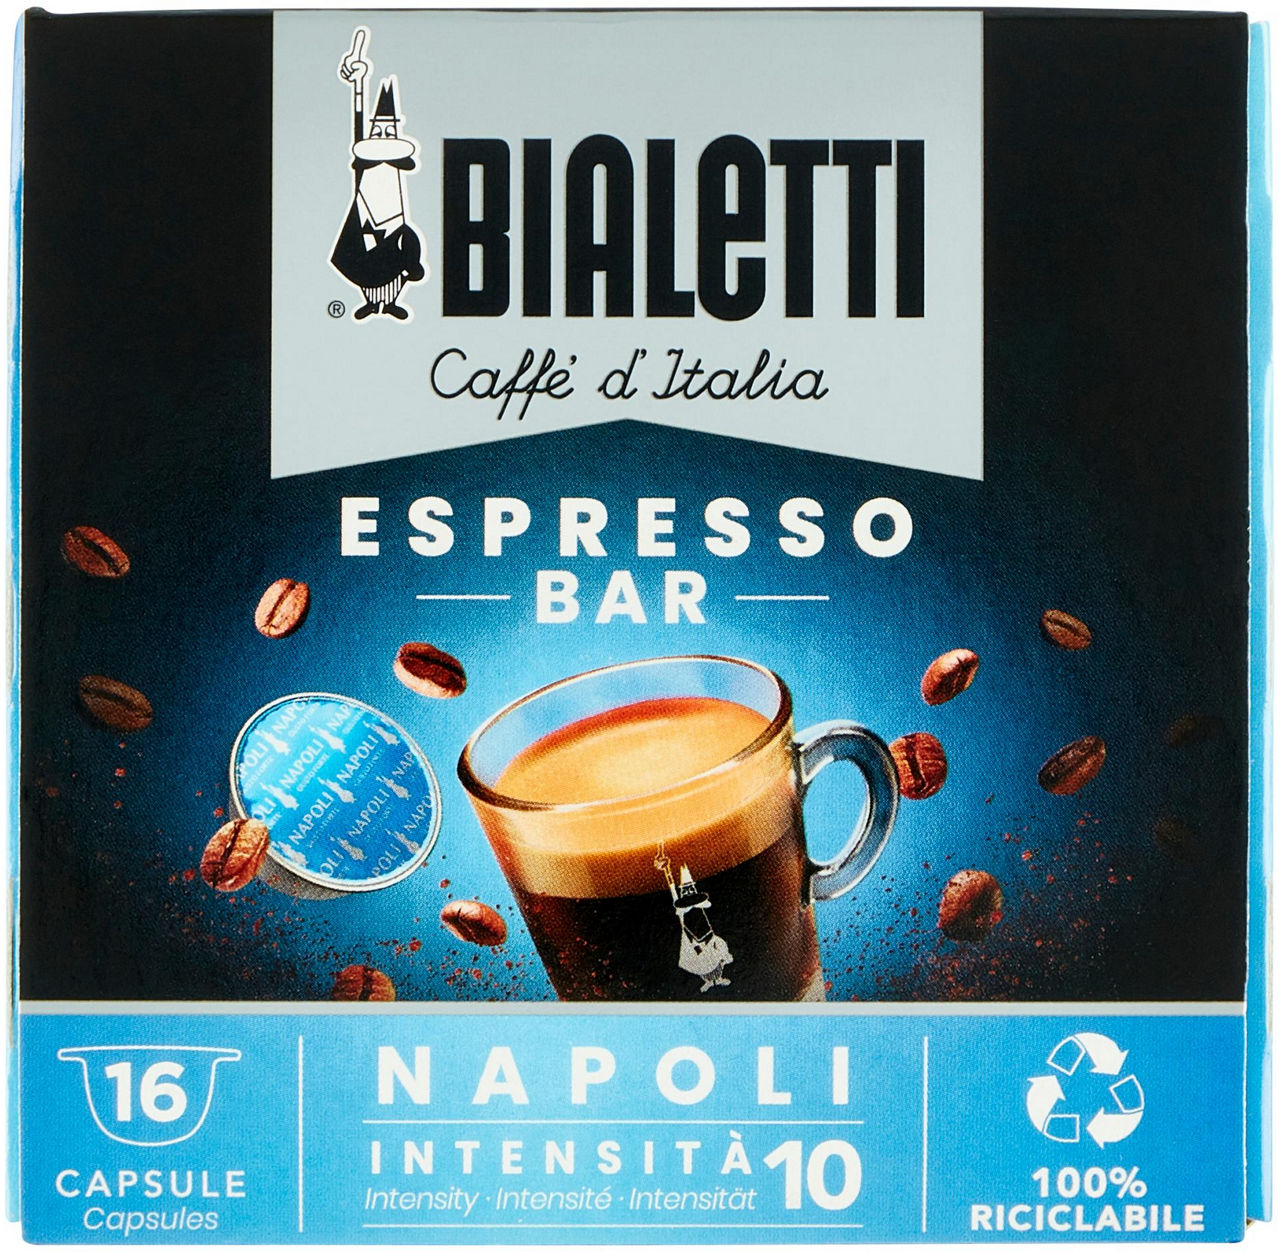 Caffe' 16 capsule bialetti napoli gusto intenso gr 112